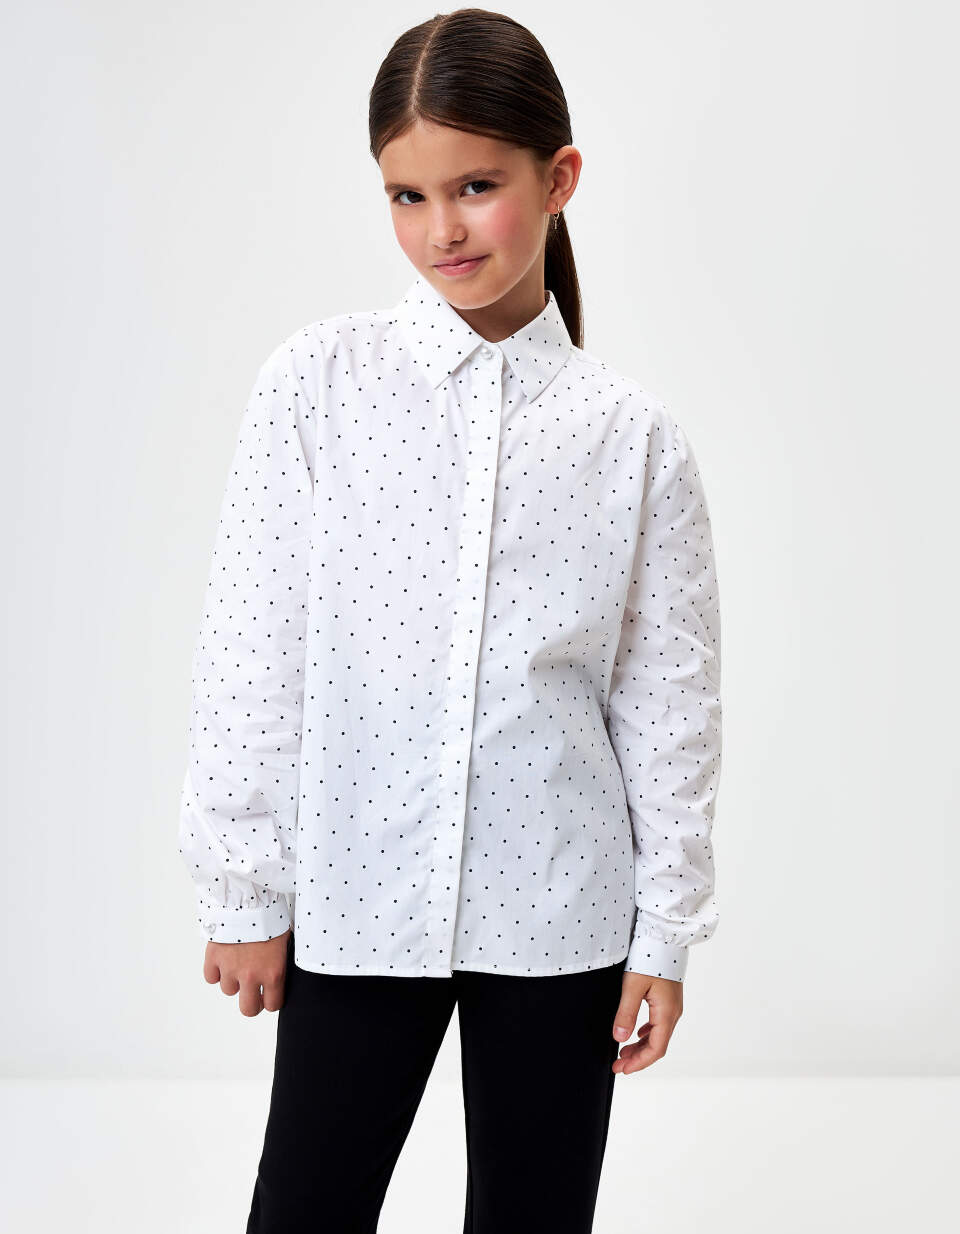 Хлопковая блузка в горошек для девочек